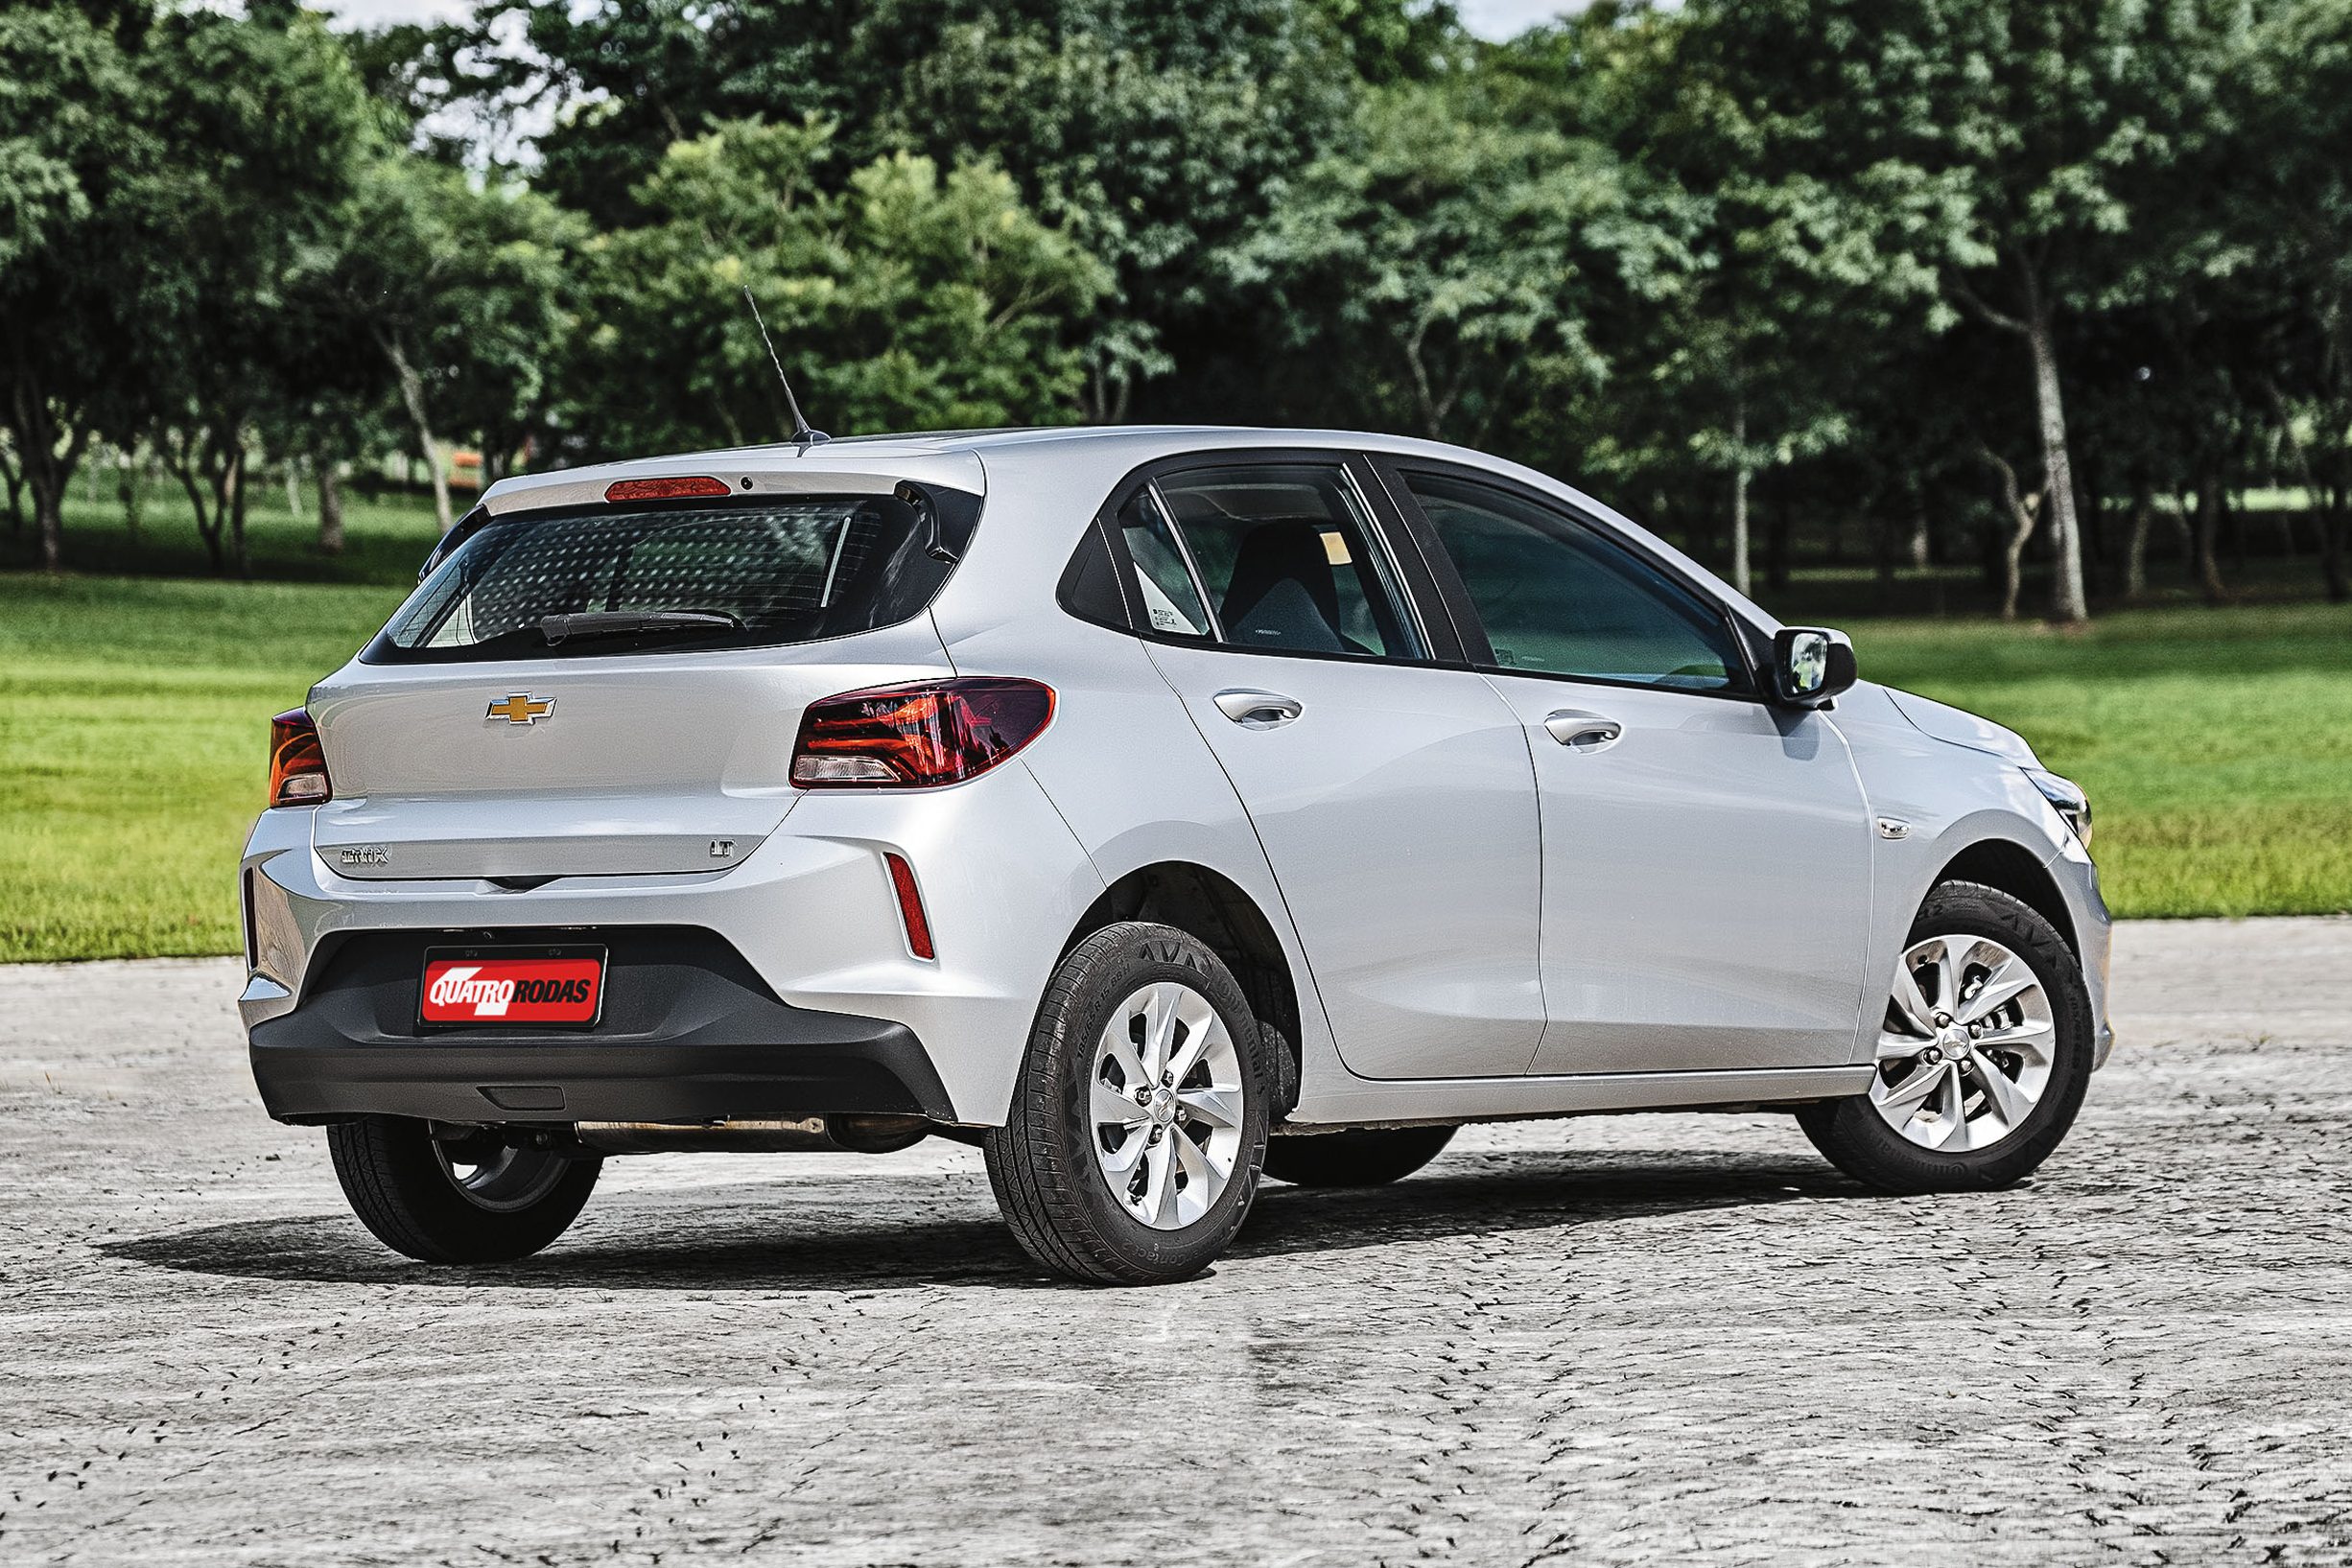 Chevrolet anuncia aumento de 4% nos preços de toda a sua linha no Brasil;  Onix Joy parte de R$ 52.150